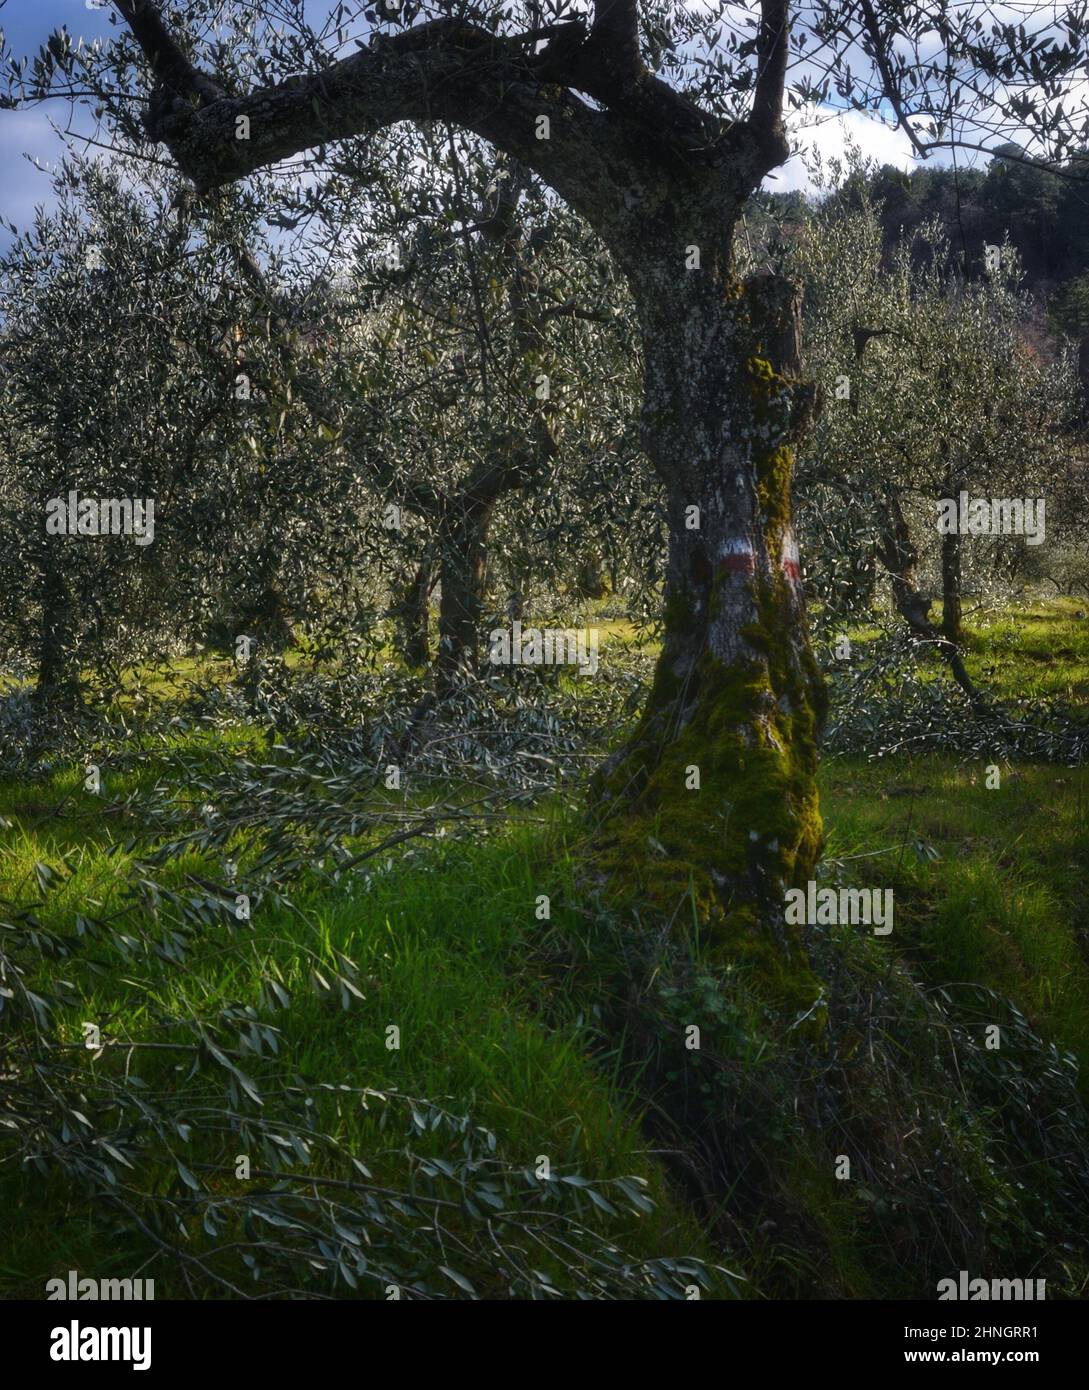 olivos recién podados en un soleado dat de invierno Foto de stock